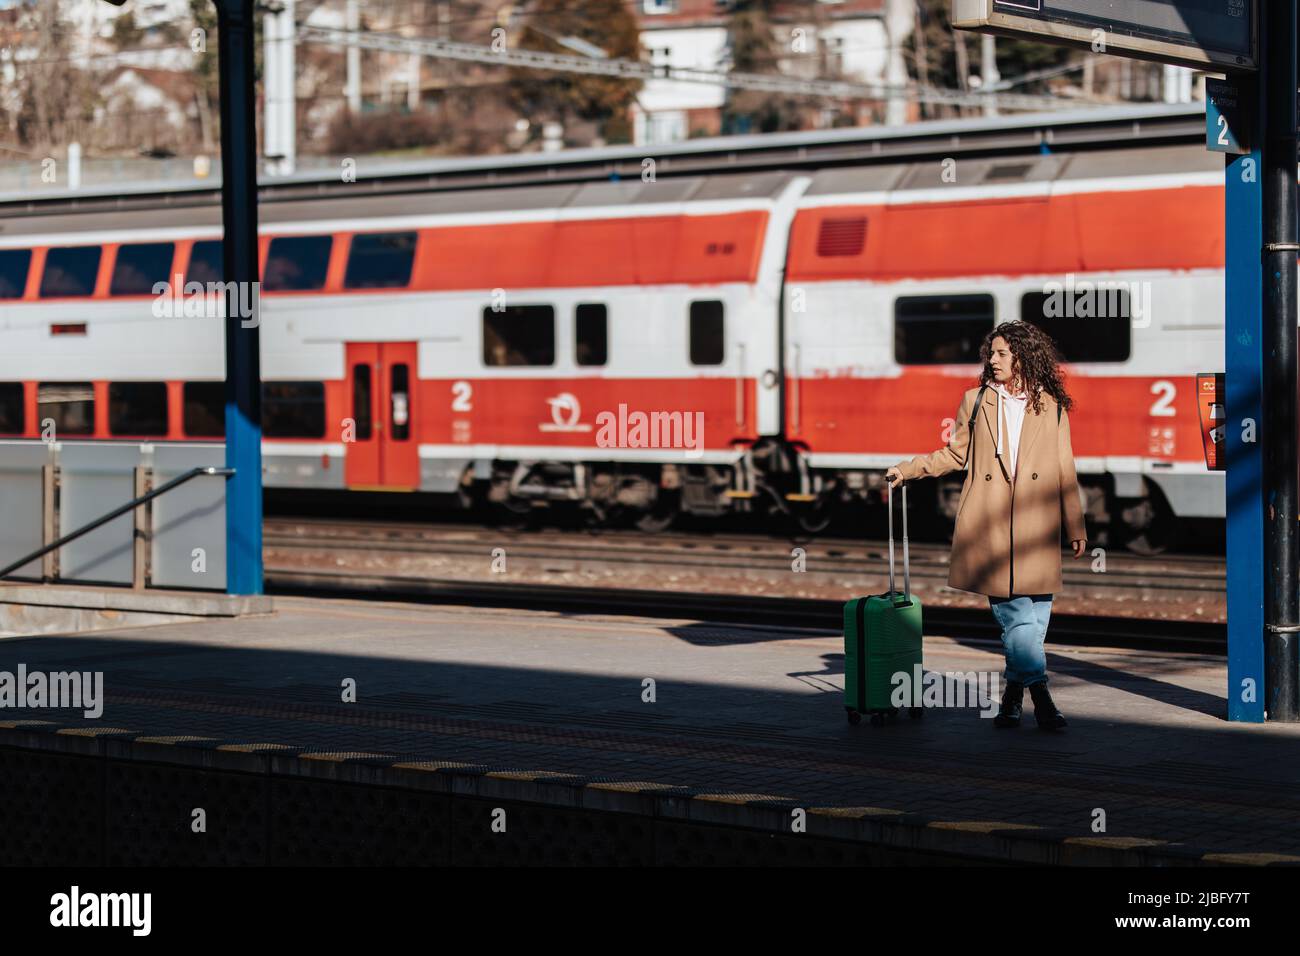 Junge Reisende Frau mit Gepäck wartet auf Zug am Bahnhof Bahnsteig.Zug im Hintergrund. Stockfoto